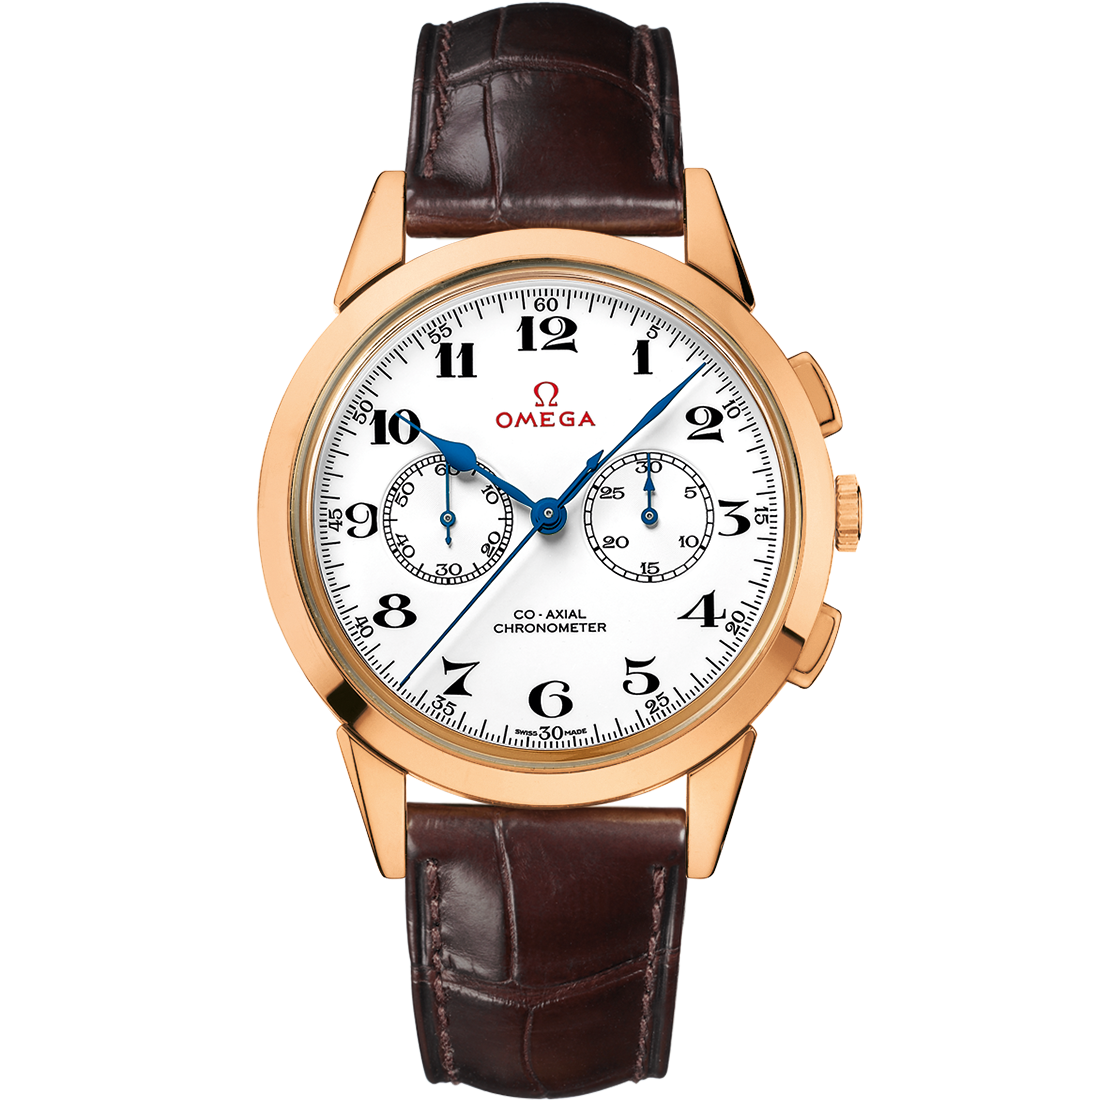 Uhr mit Weiß Zifferblatt auf Roségold Gehäuse mit Lederarmband bracelet - Besondere Modelle Offizieller olympischer Zeitnehmer 39 mm, Roségold mit Lederarmband - 522.53.39.50.04.001